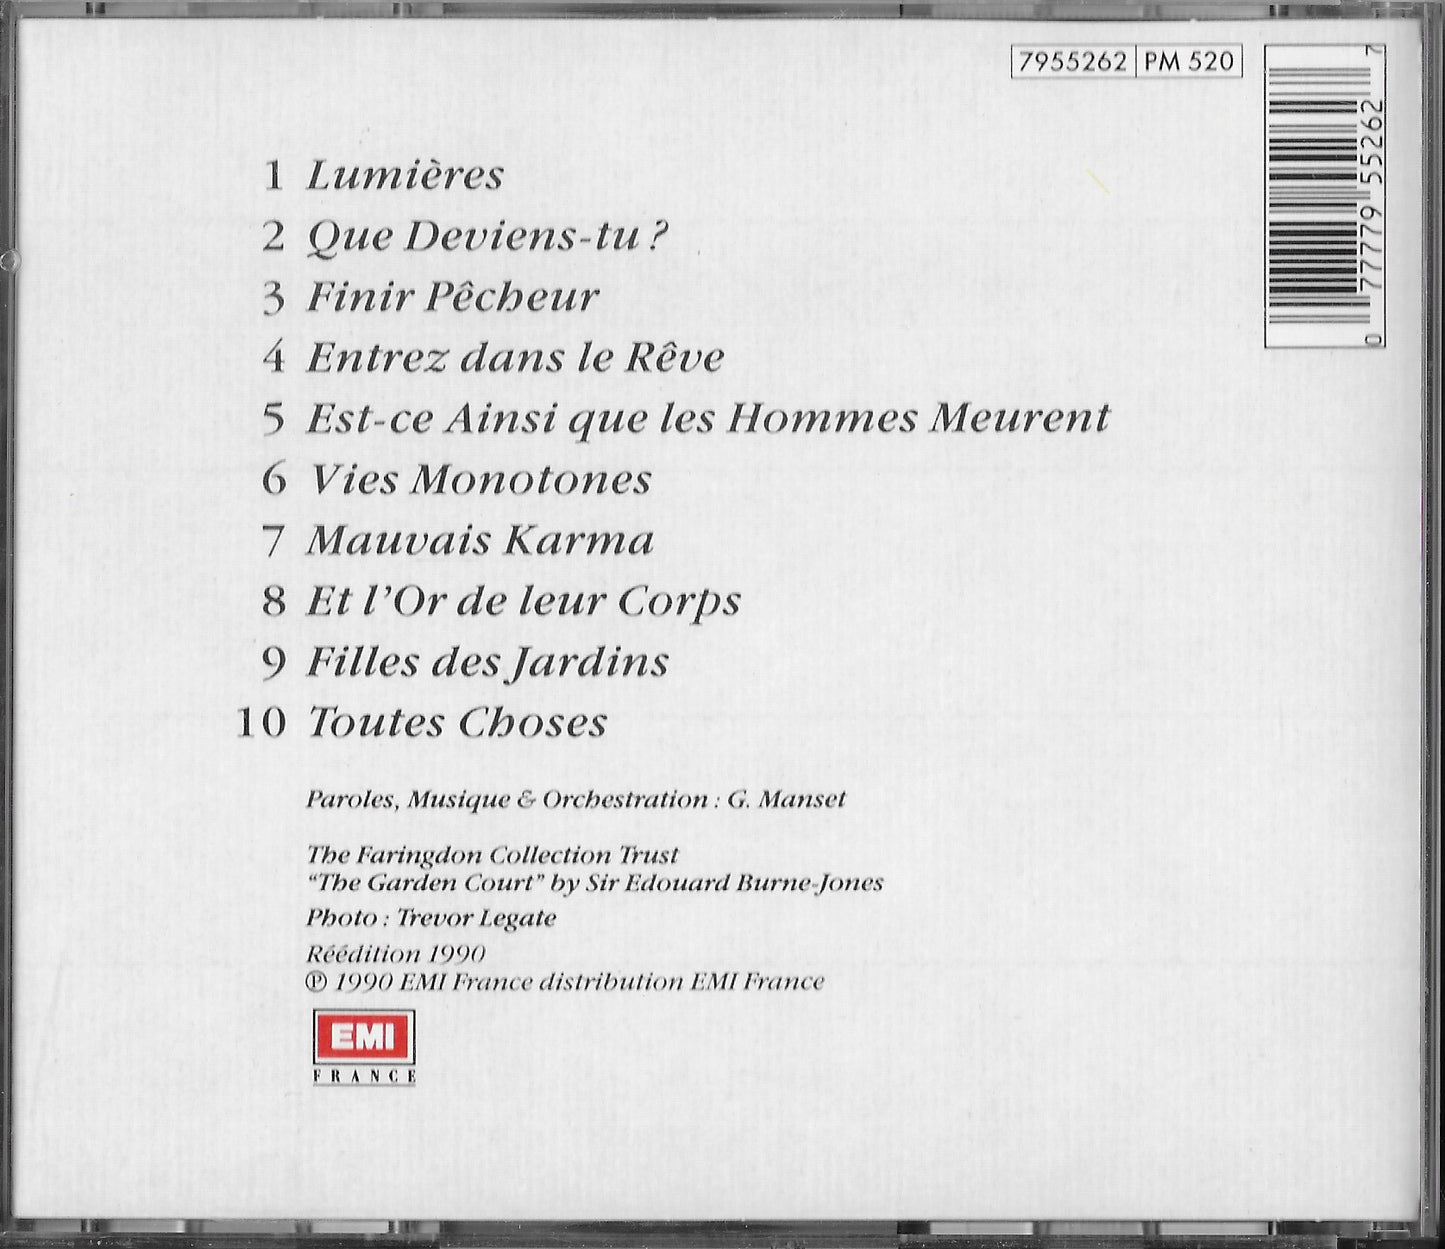 GERARD MANSET - Toutes Choses (CD N°2 uniquement)